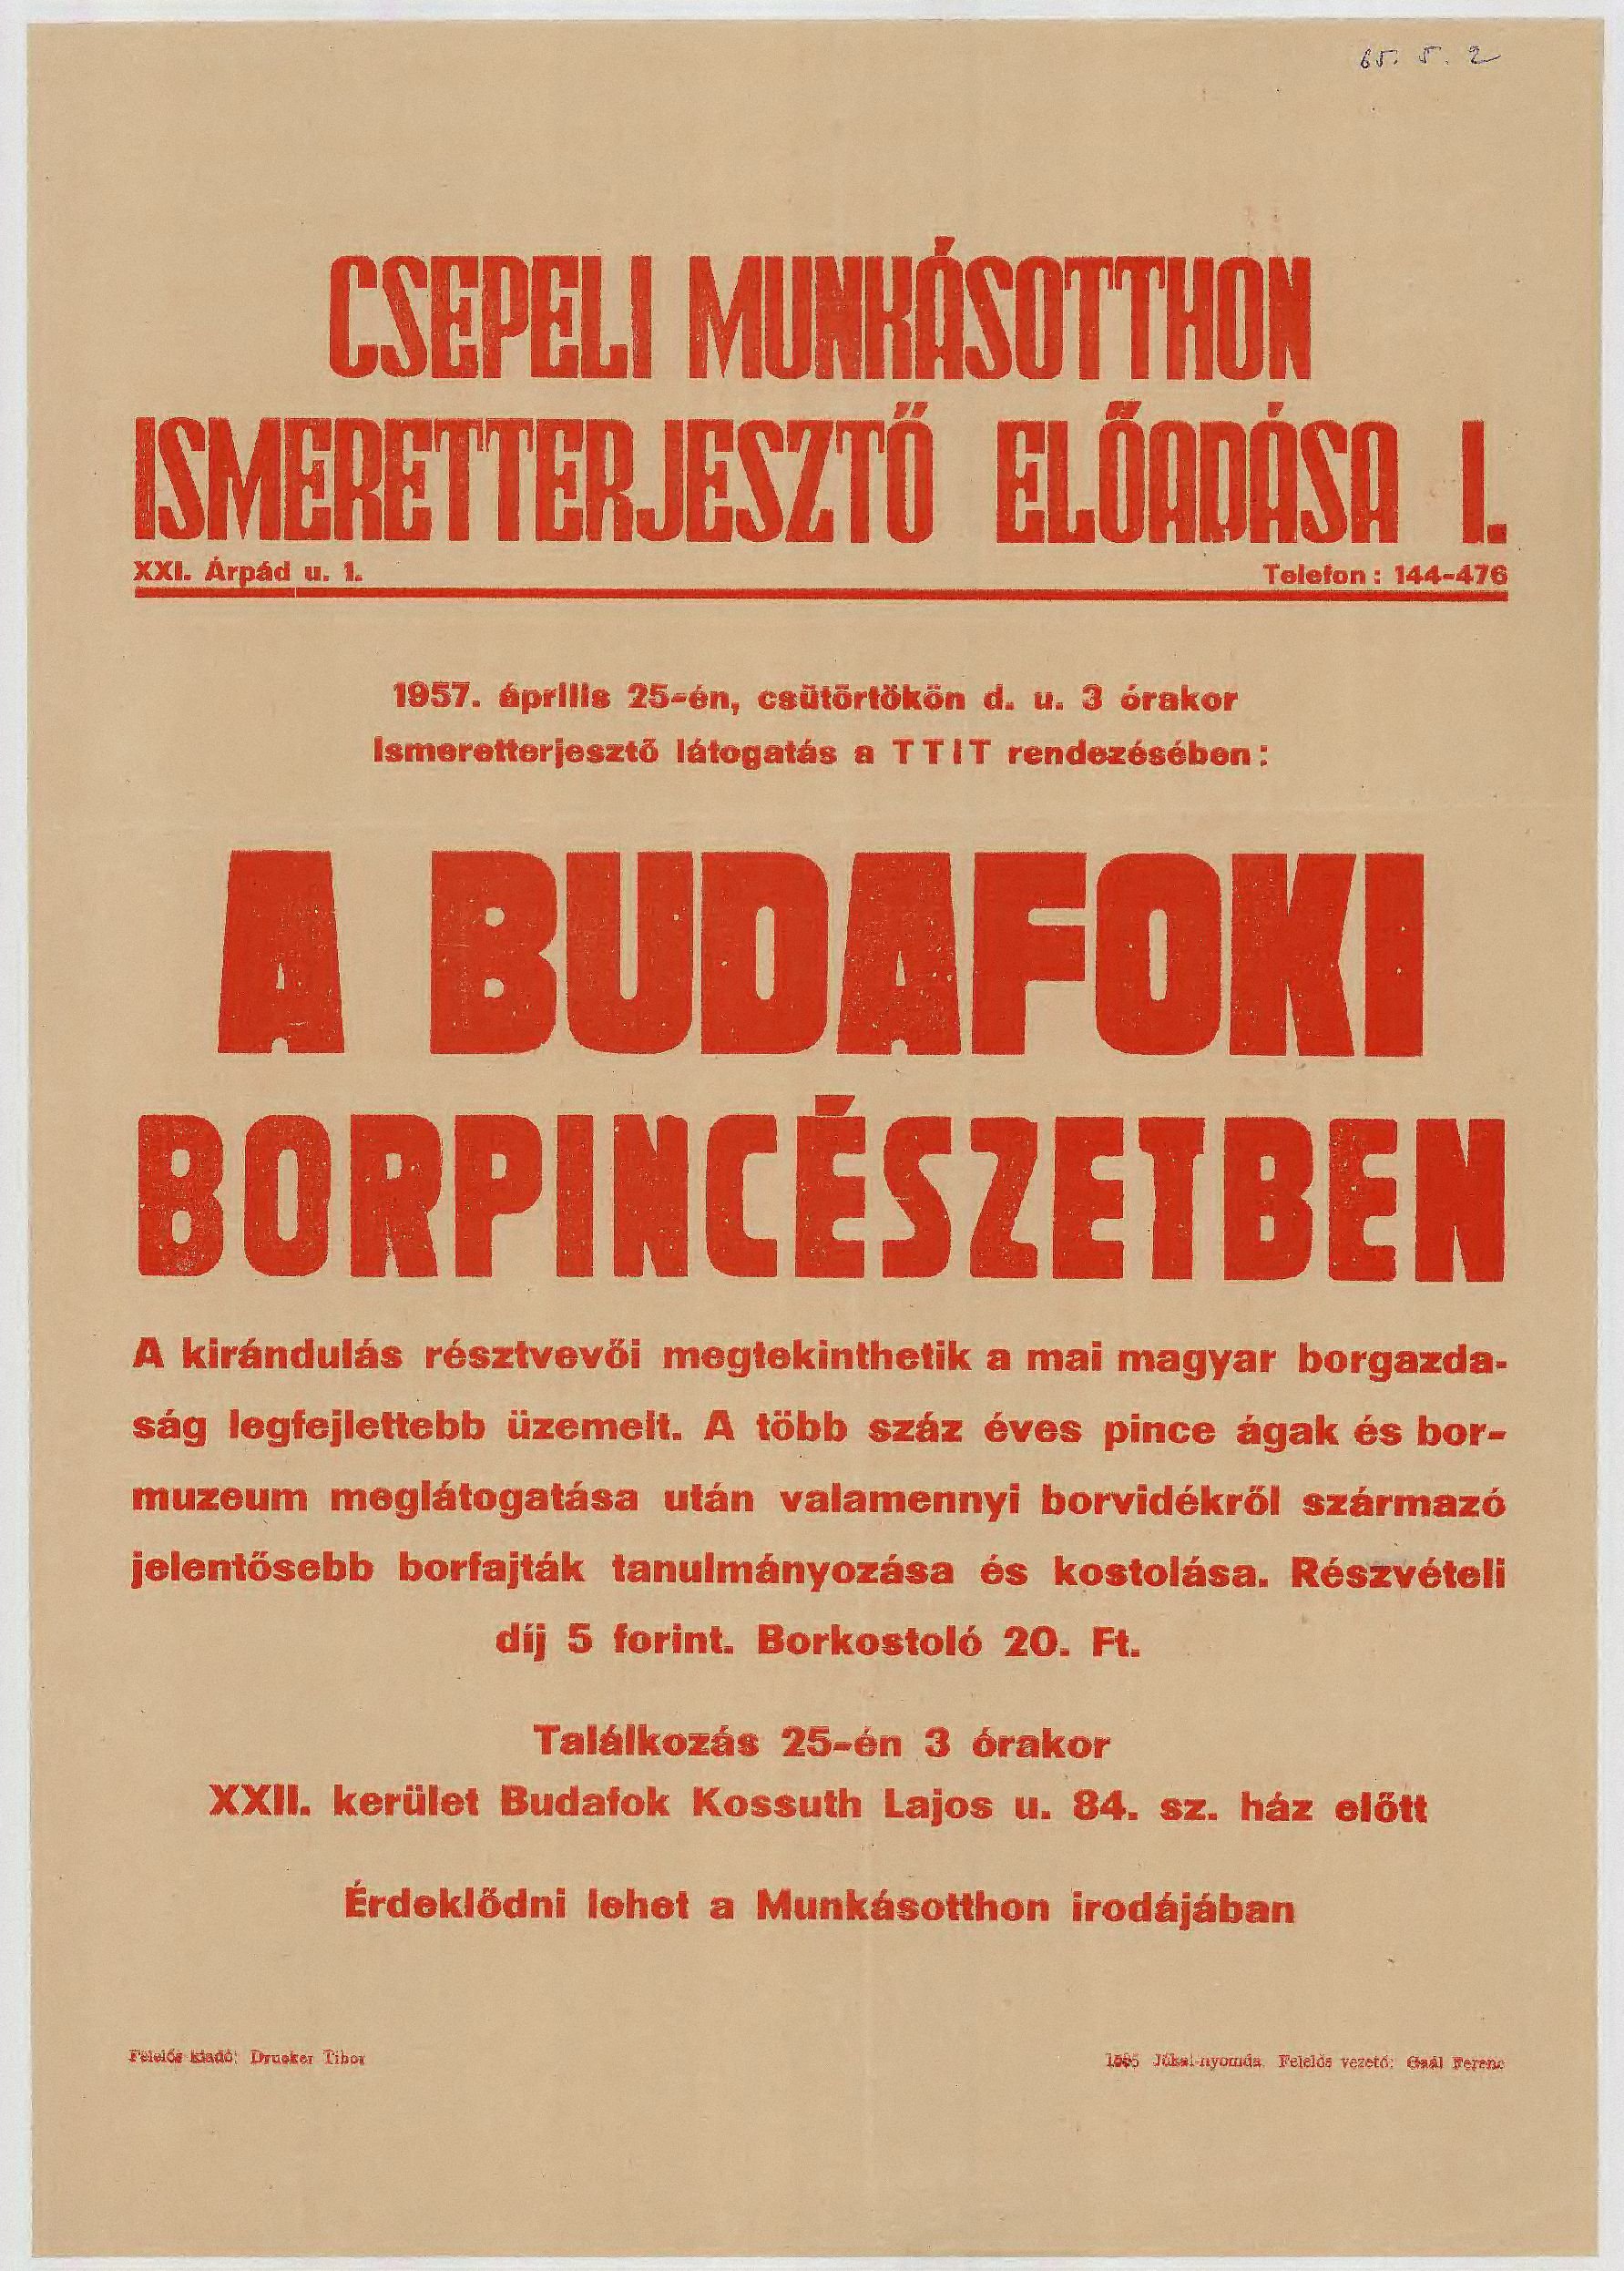 Csepeli Munkásotton, A TTIT rendezésében: Ismeretterjesztő látogatás budafoki borpincében (Budapesti Történeti Múzeum CC BY-NC-SA)